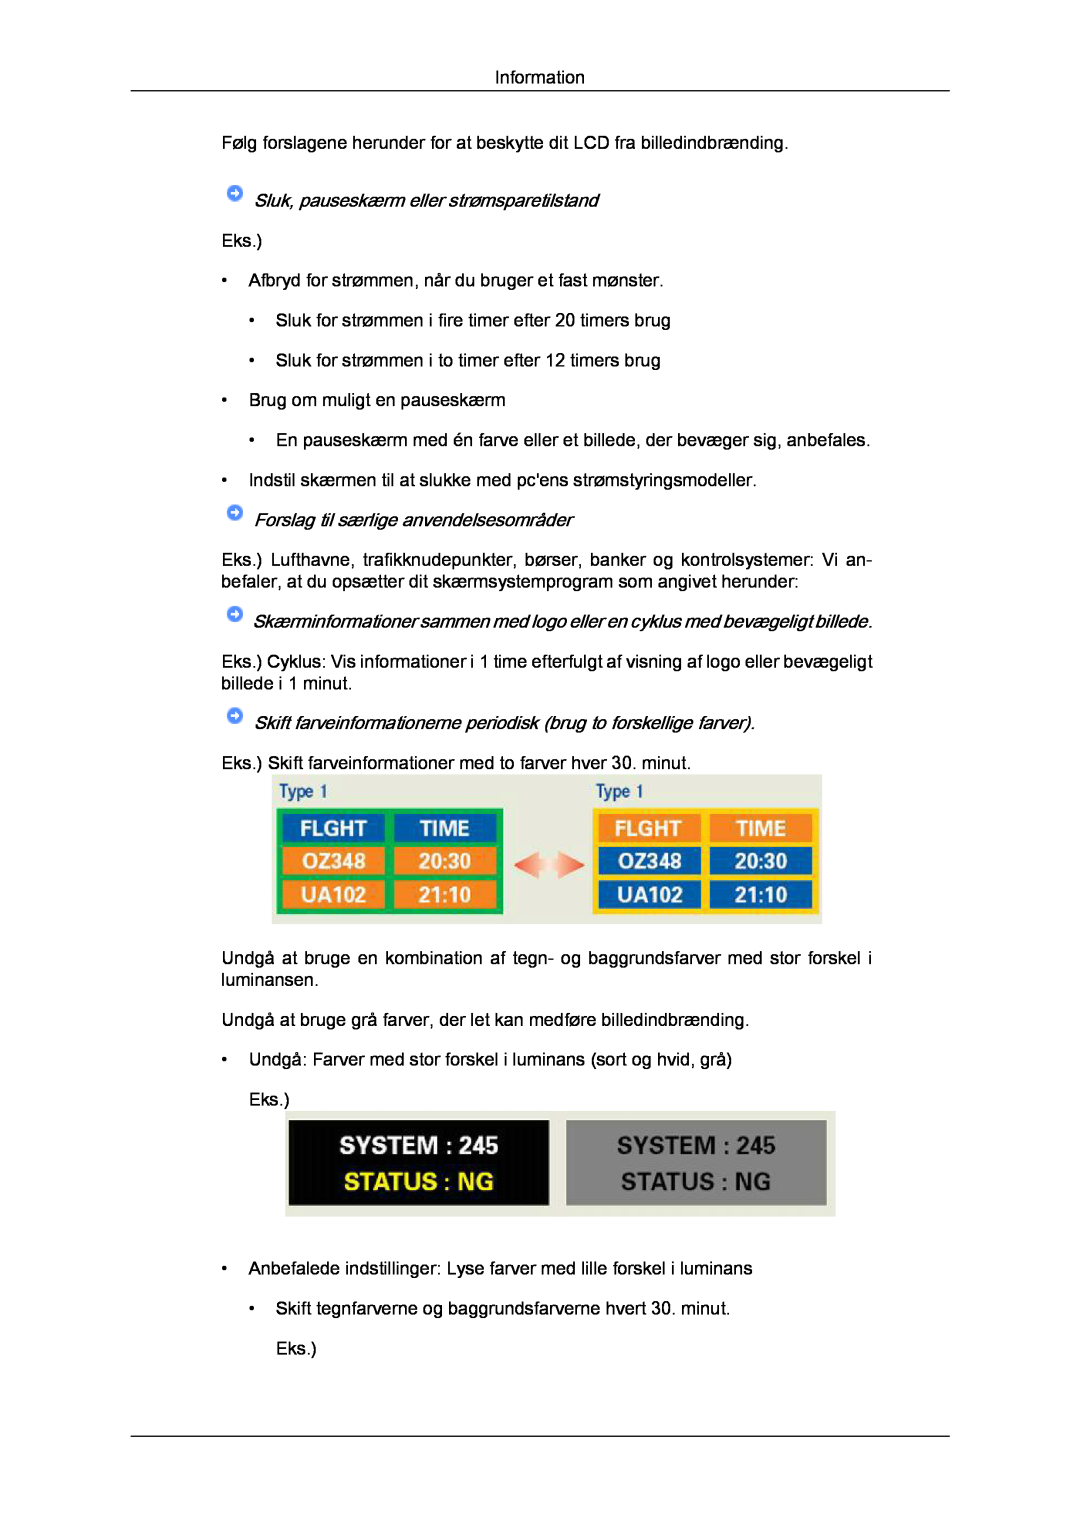 Samsung LH23PTTMBC/EN manual Sluk, pauseskærm eller strømsparetilstand, Forslag til særlige anvendelsesområder, Information 